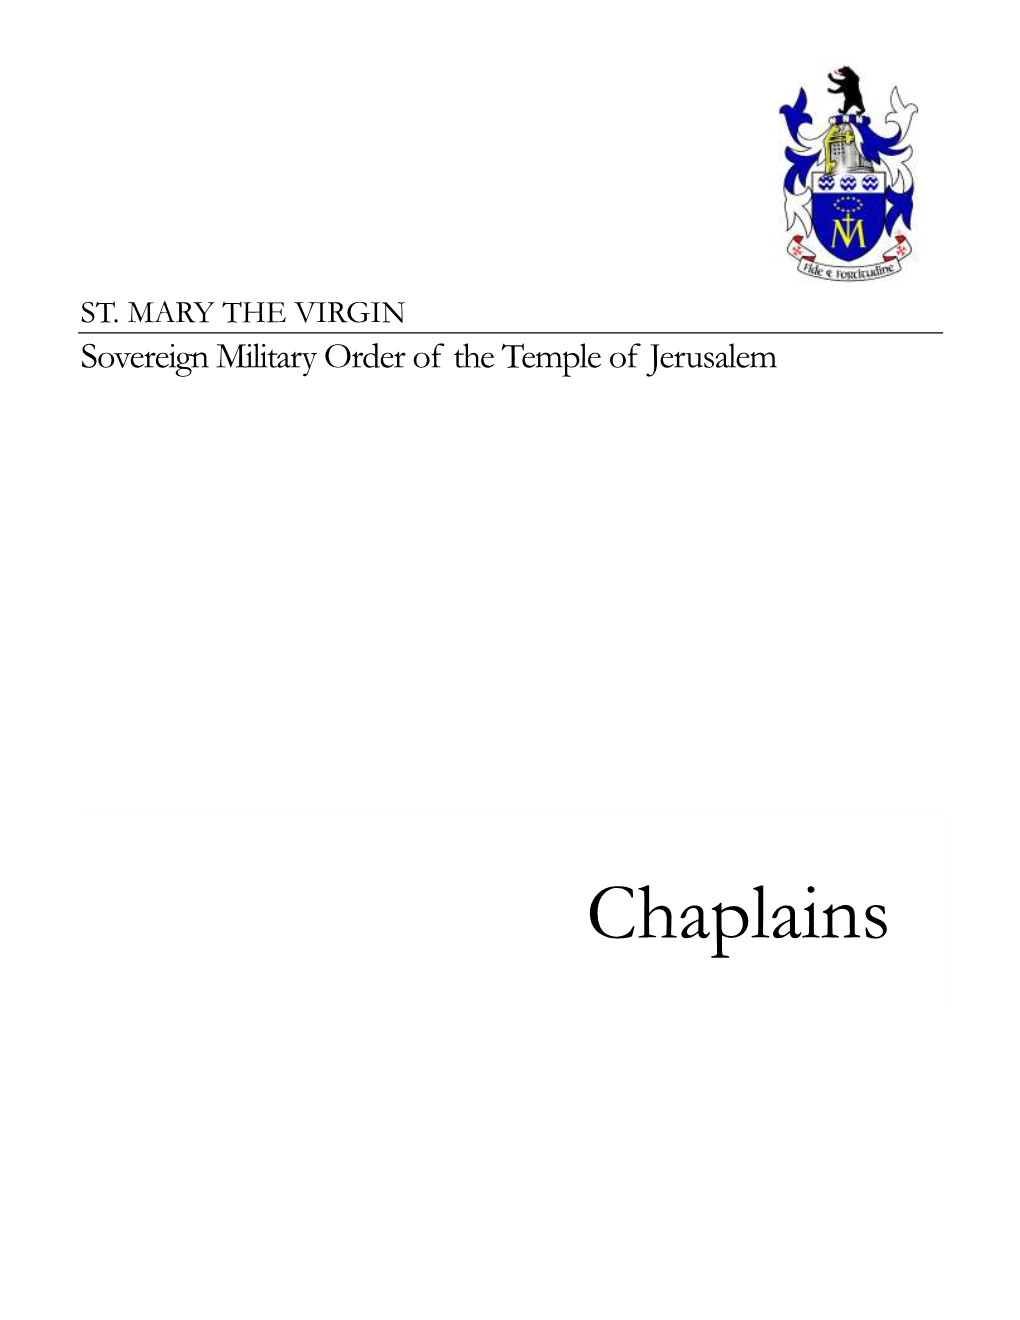 Chaplains ST